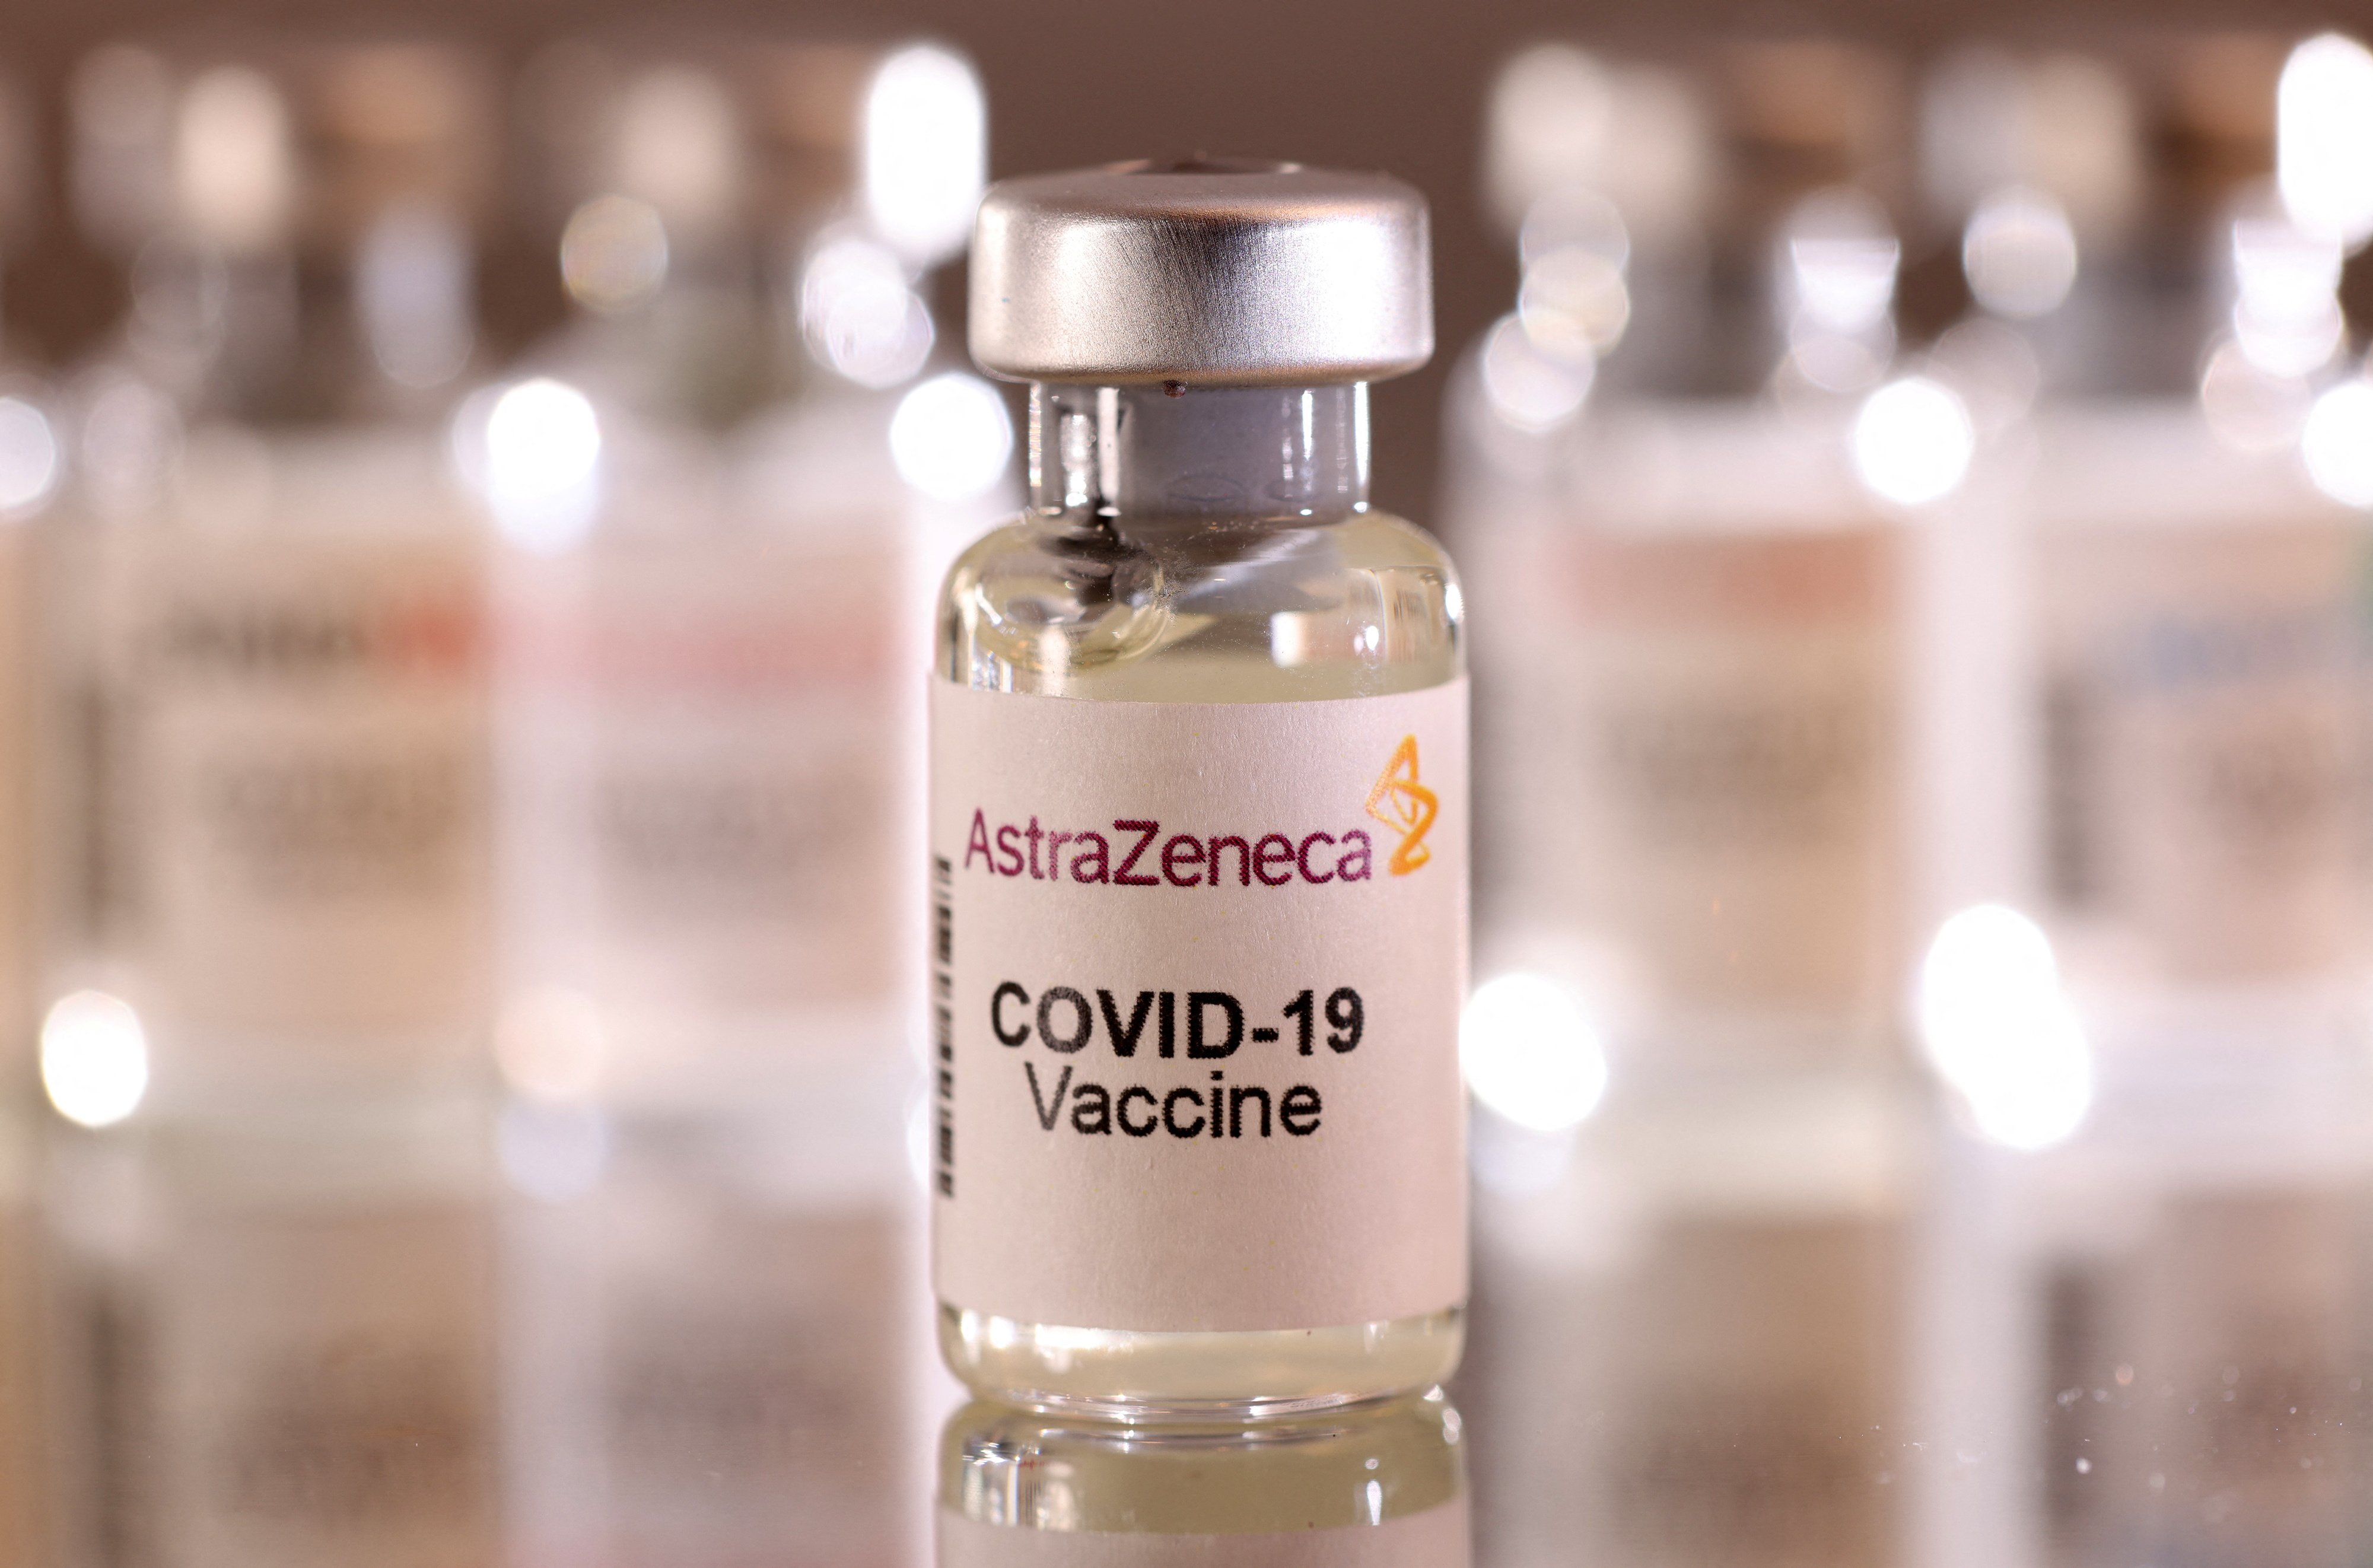 La vacuna COVID 19 AstraZeneca no contiene grafeno entre sus componentes” dijo ANMAT (REUTERS/Dado Ruvic/Illustration)